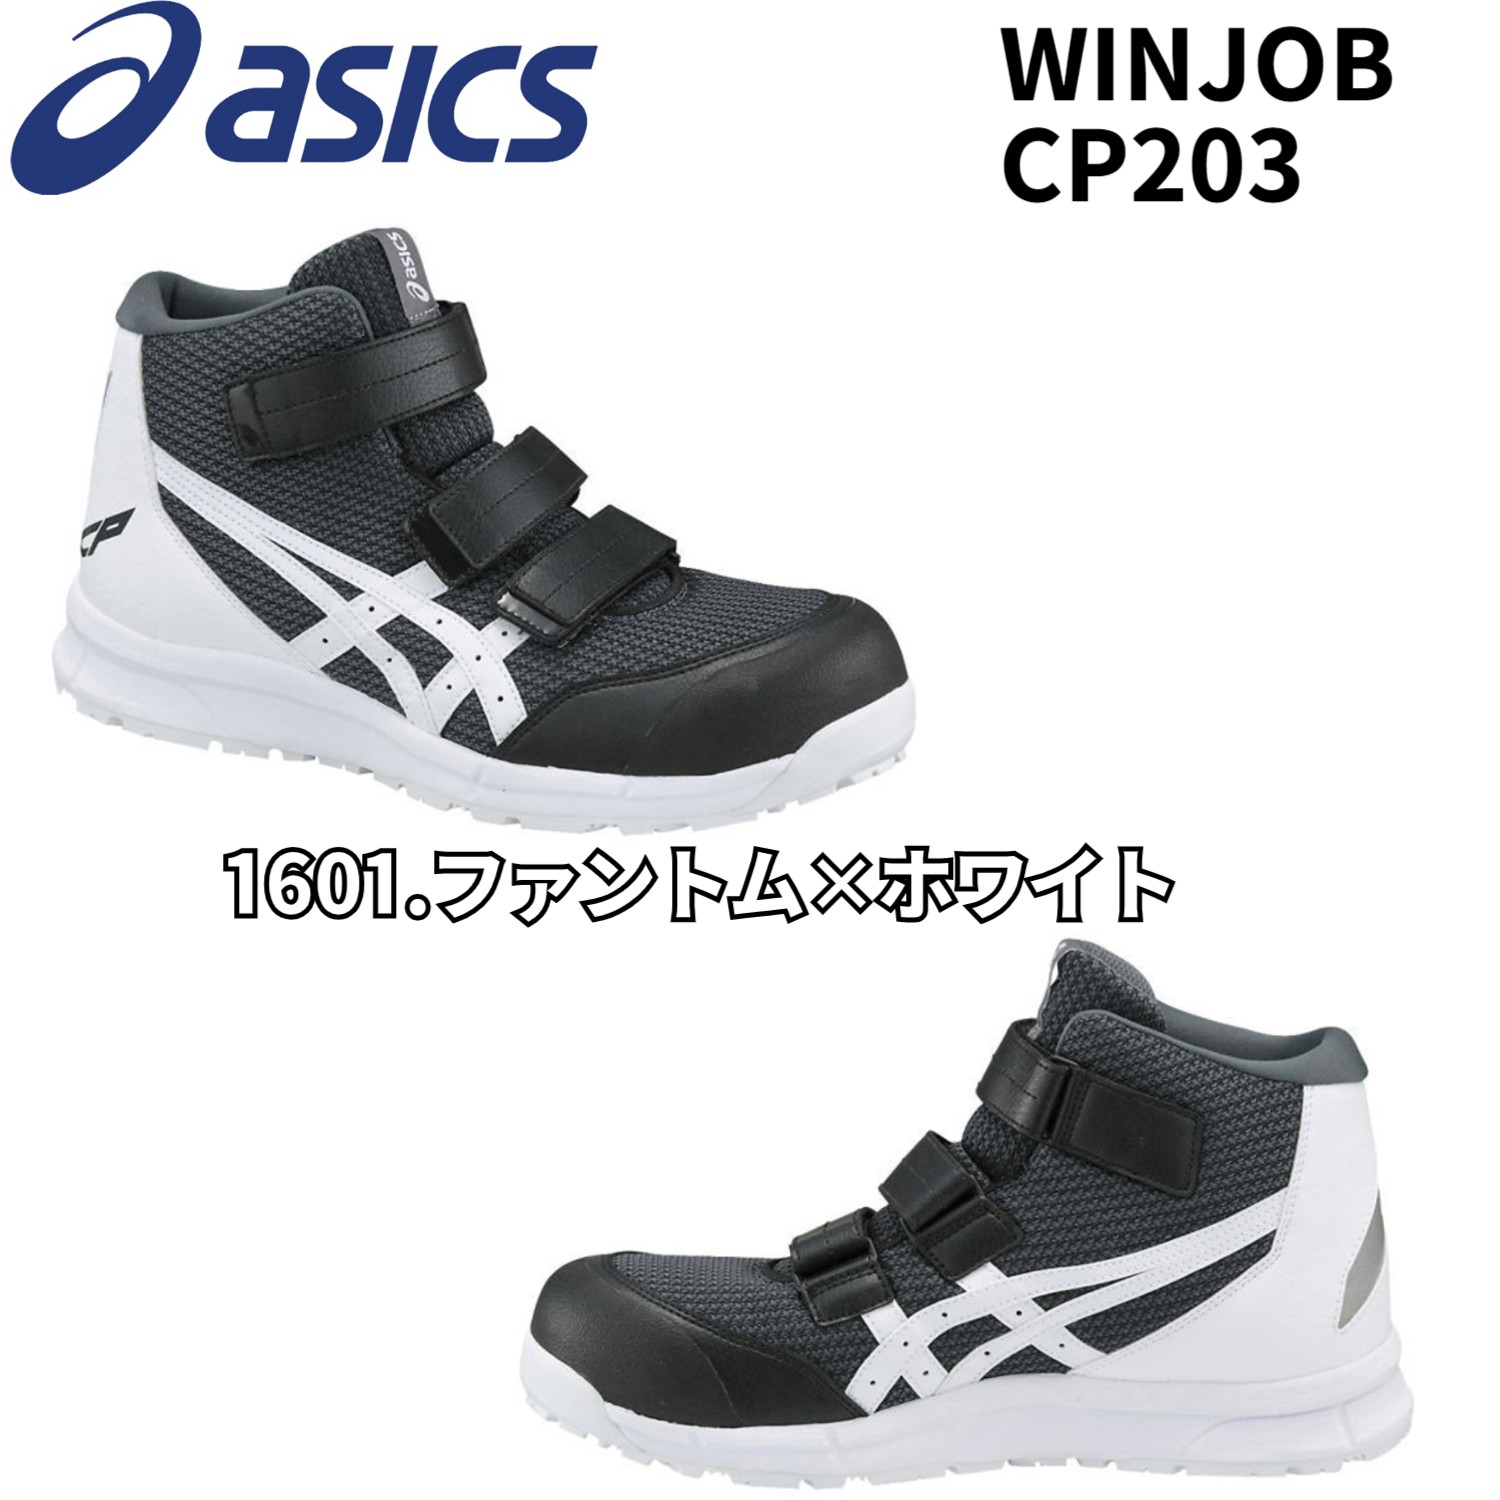 アシックス asics 安全靴 ハイカット ウィンジョブ CP203 ベルトタイプ メッシュ 作業靴